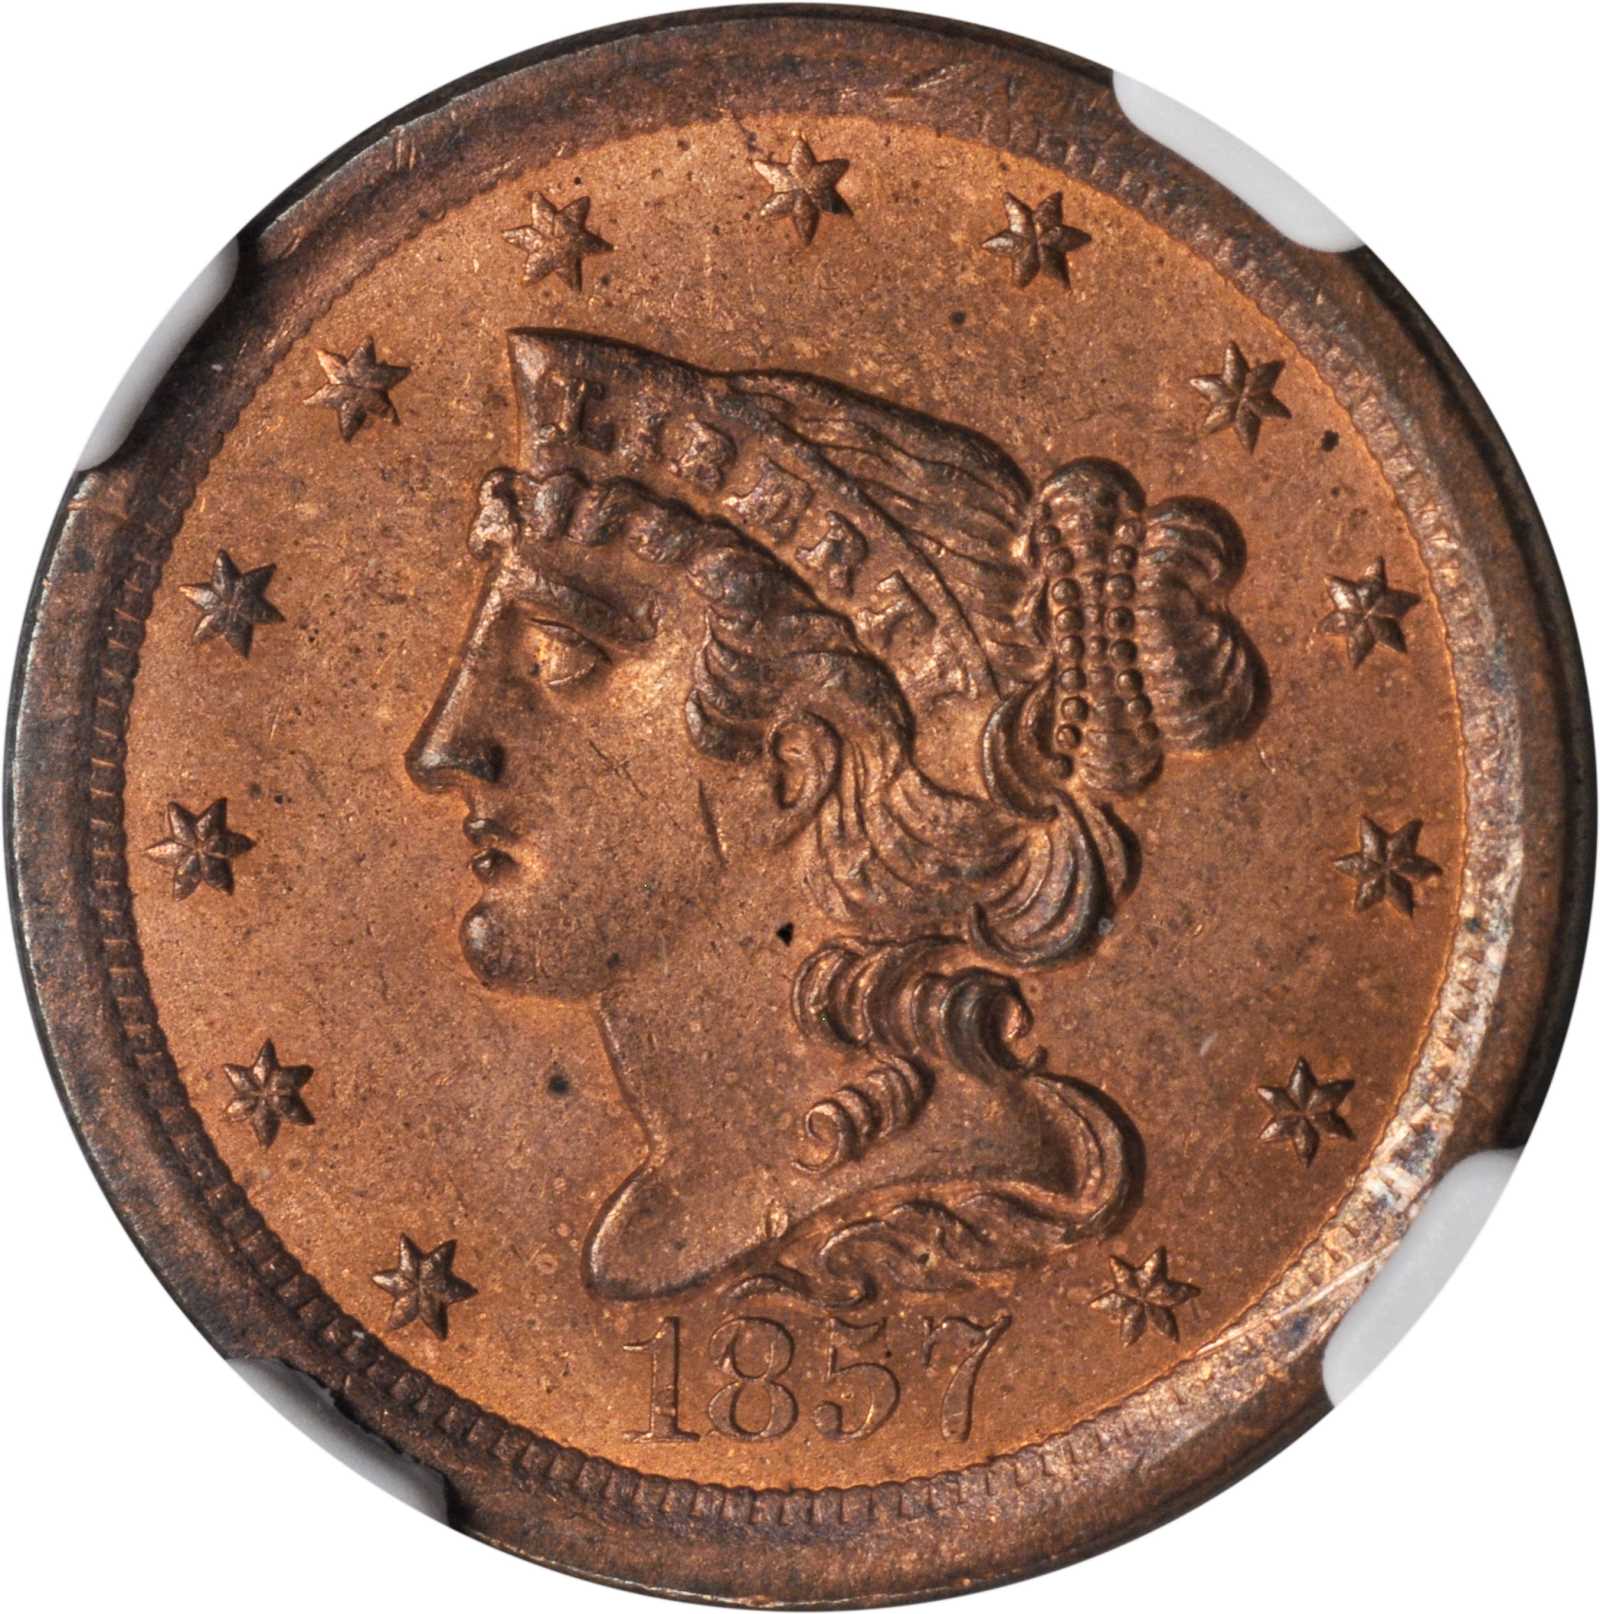 1857 Braided Hair Half Cent. B-2. Rarity-4. Proof-66 RB (NGC